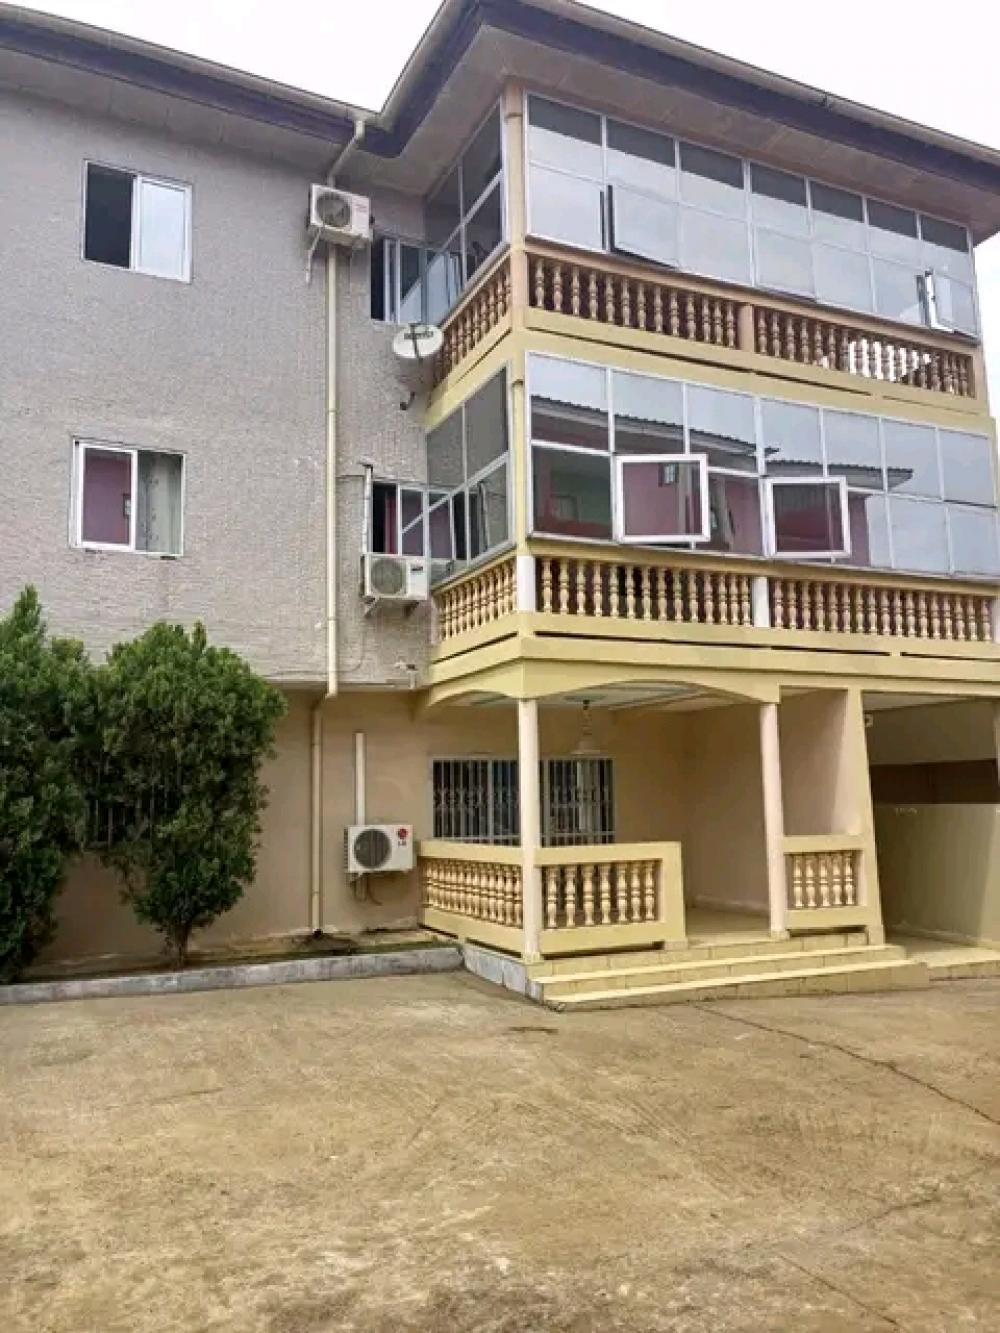 Appartement 2 chambres à louer à Akanda, Angondjé. Prix: 280 000 FcfaPhoto Annonce Gabonhome 0